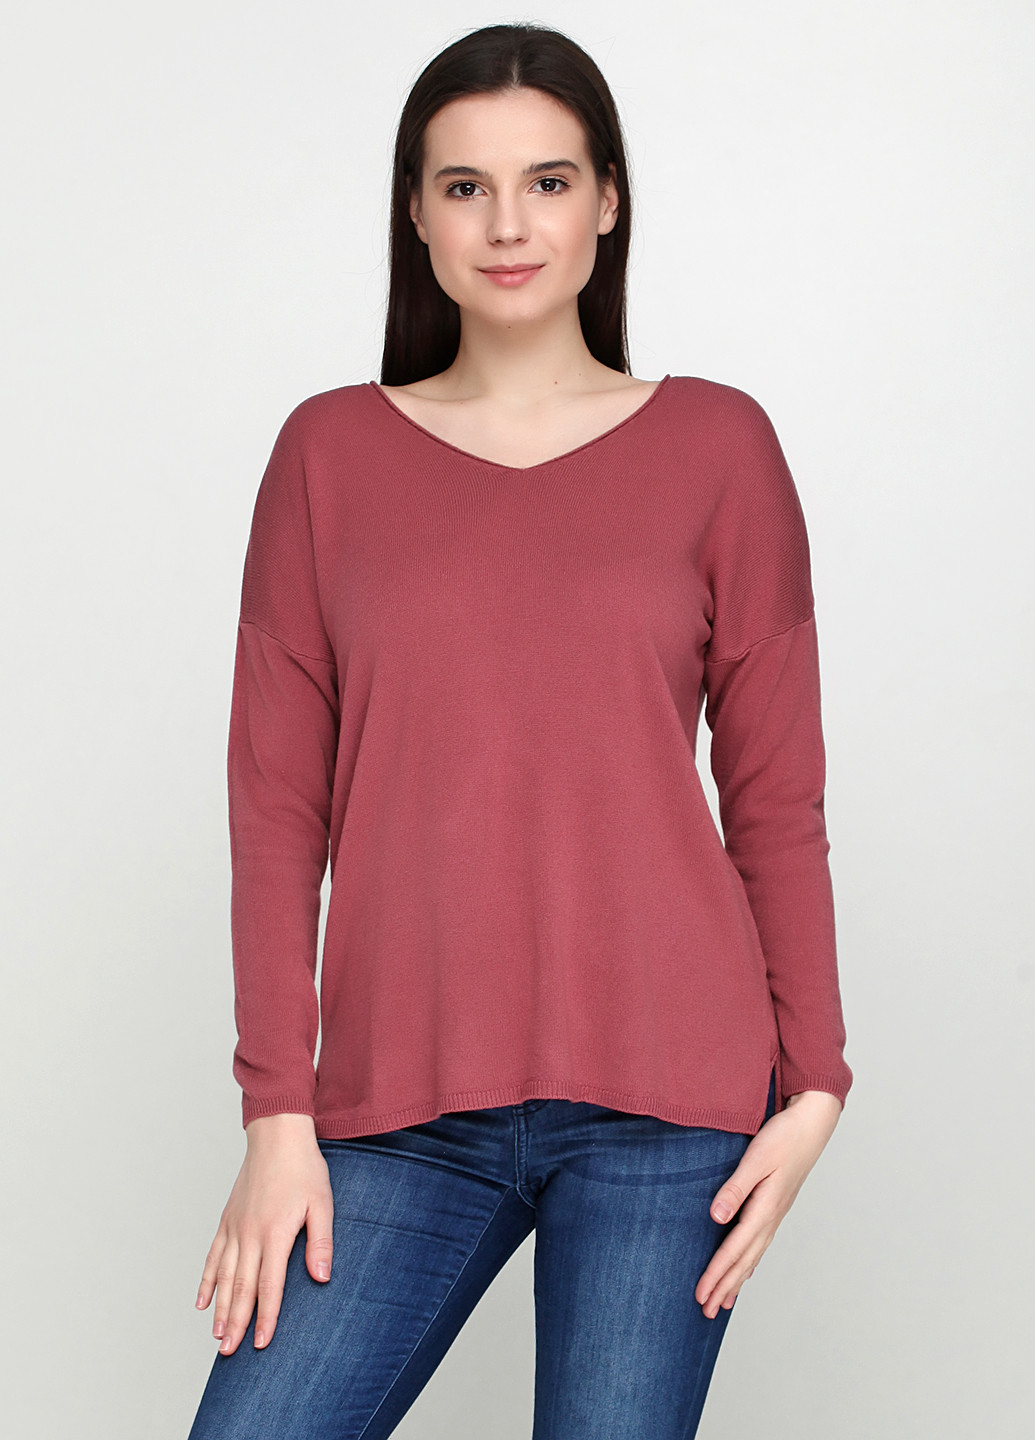 Темно-розовый демисезонный пуловер пуловер Fashion